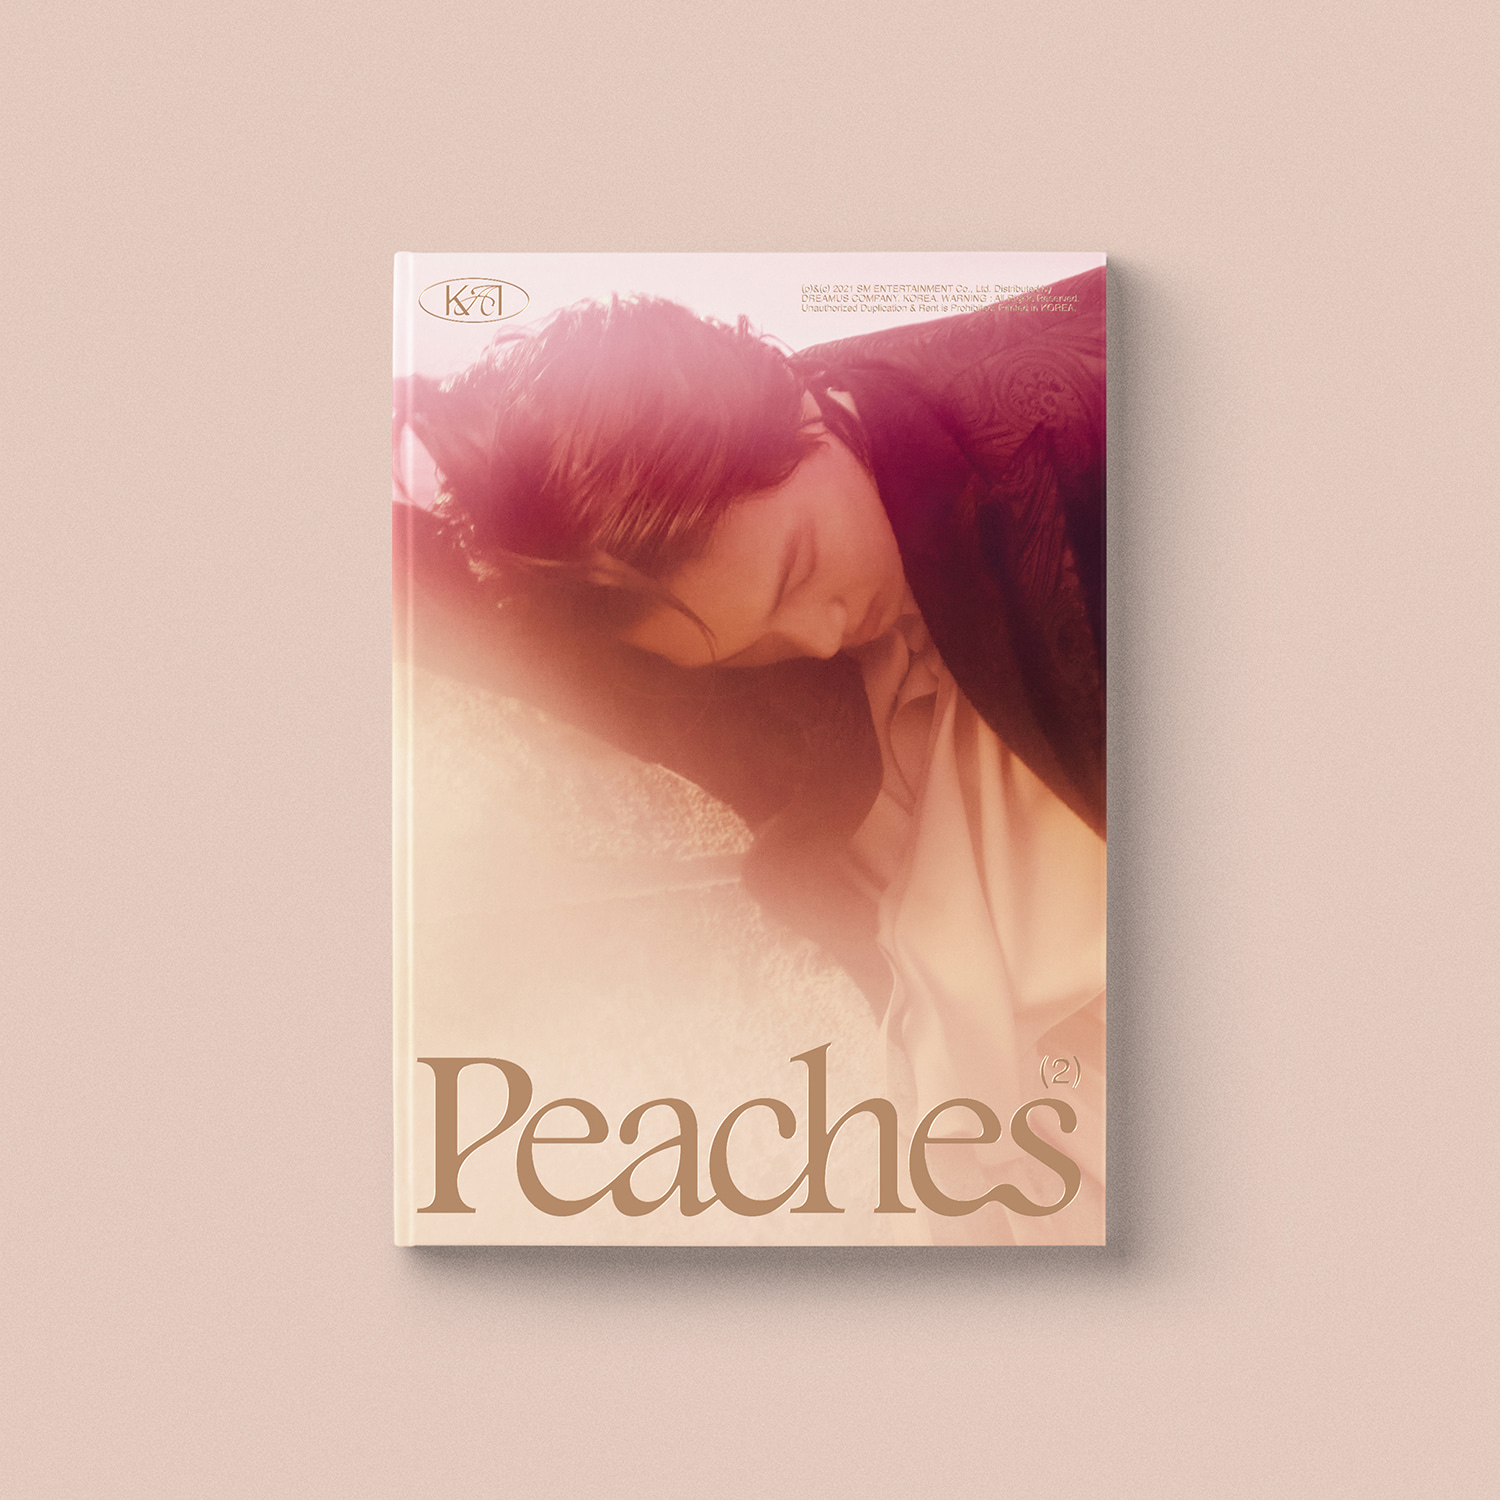 카이(KAI) - 미니 2집 [Peaches] (Peaches 버전)케이팝스토어(kpop store)